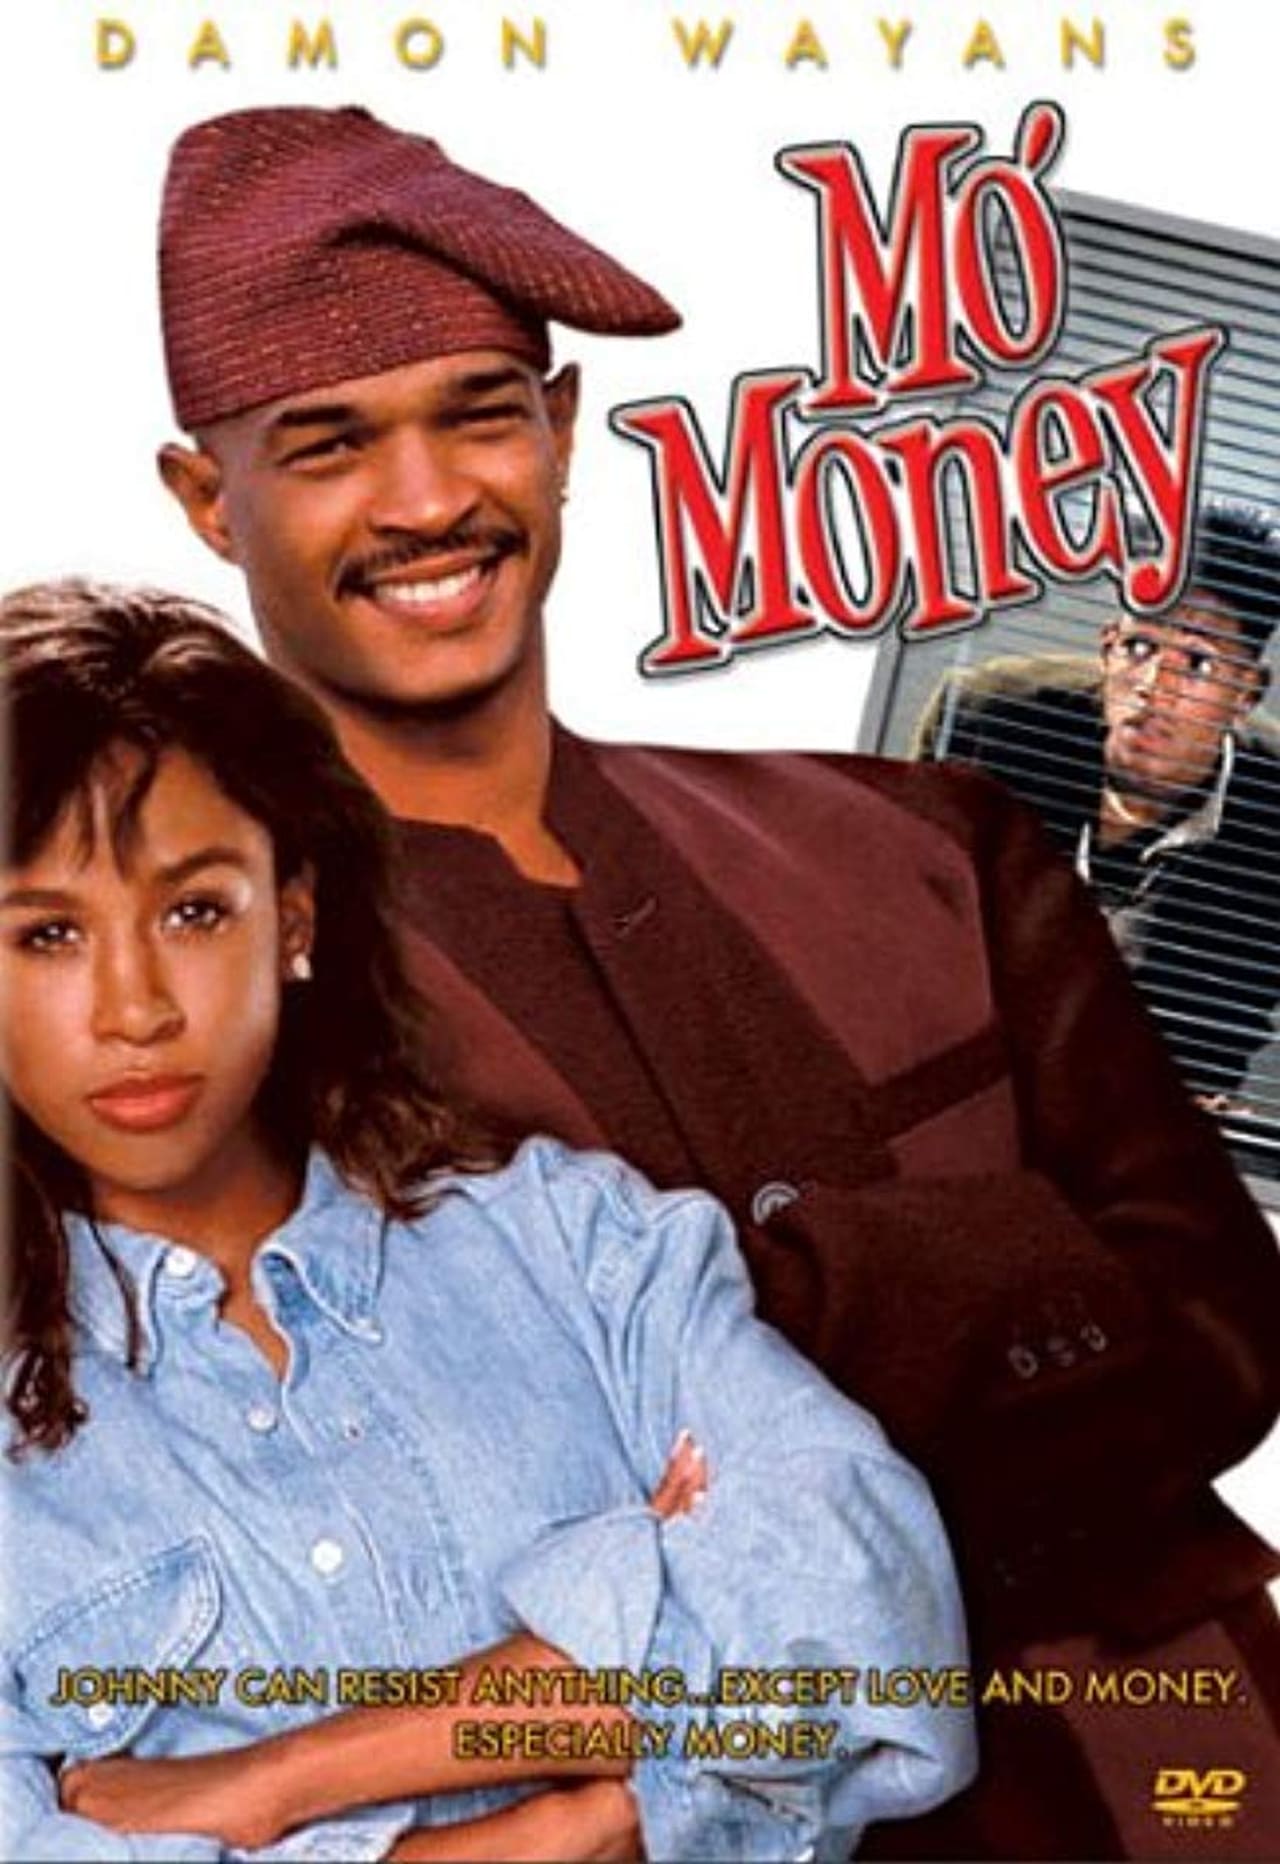 EN - Mo' Money (1992) - WAYANS BROS